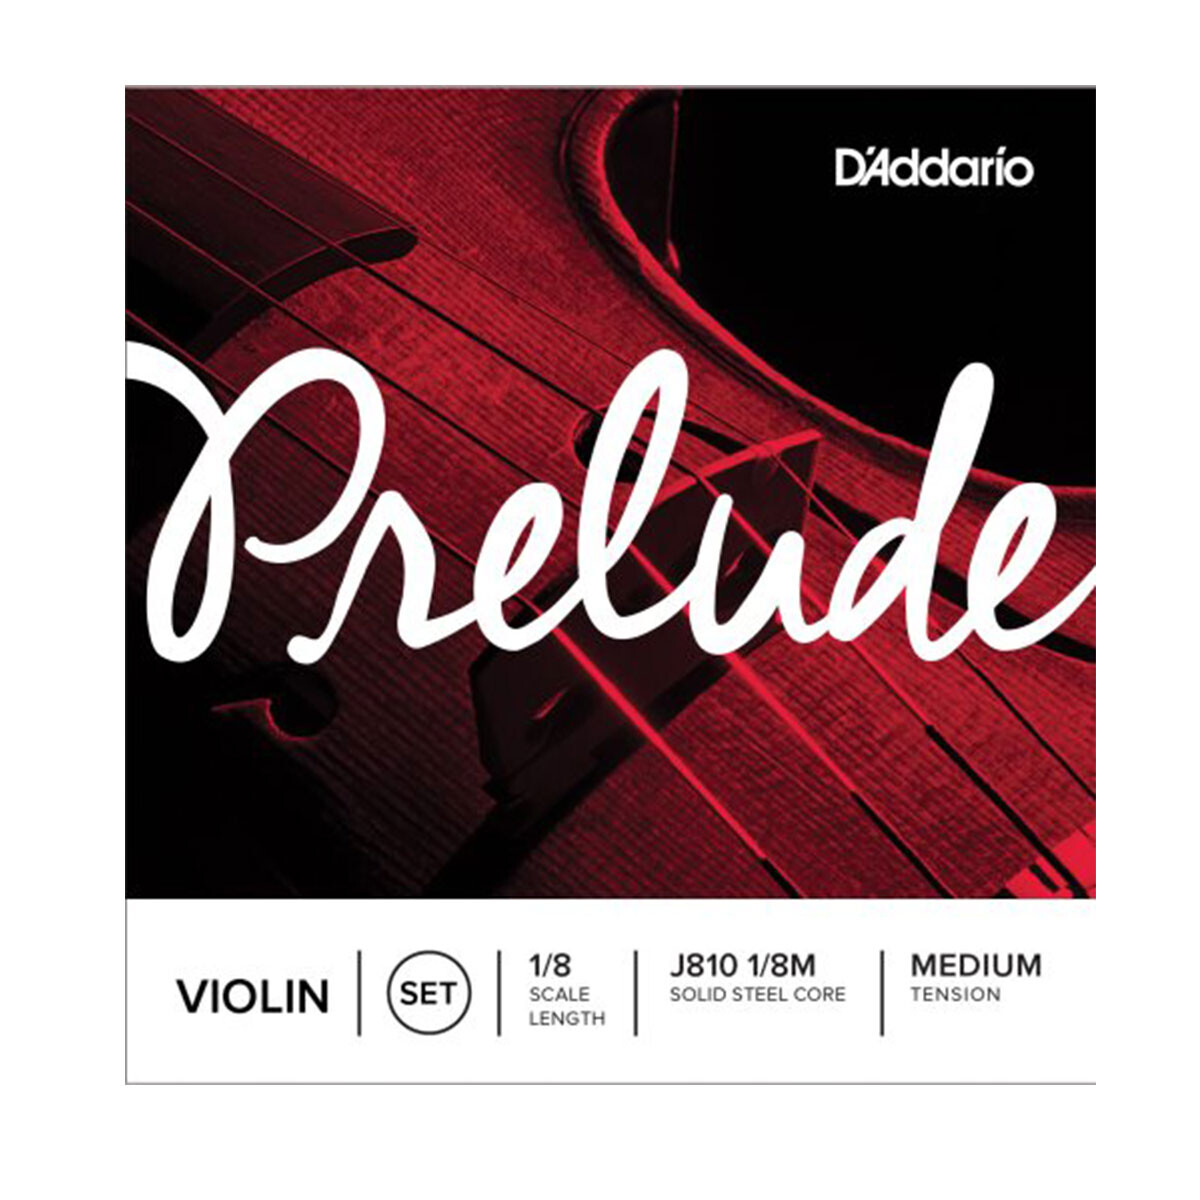 Encordado violin Daddario J810 Prelude 1/8 